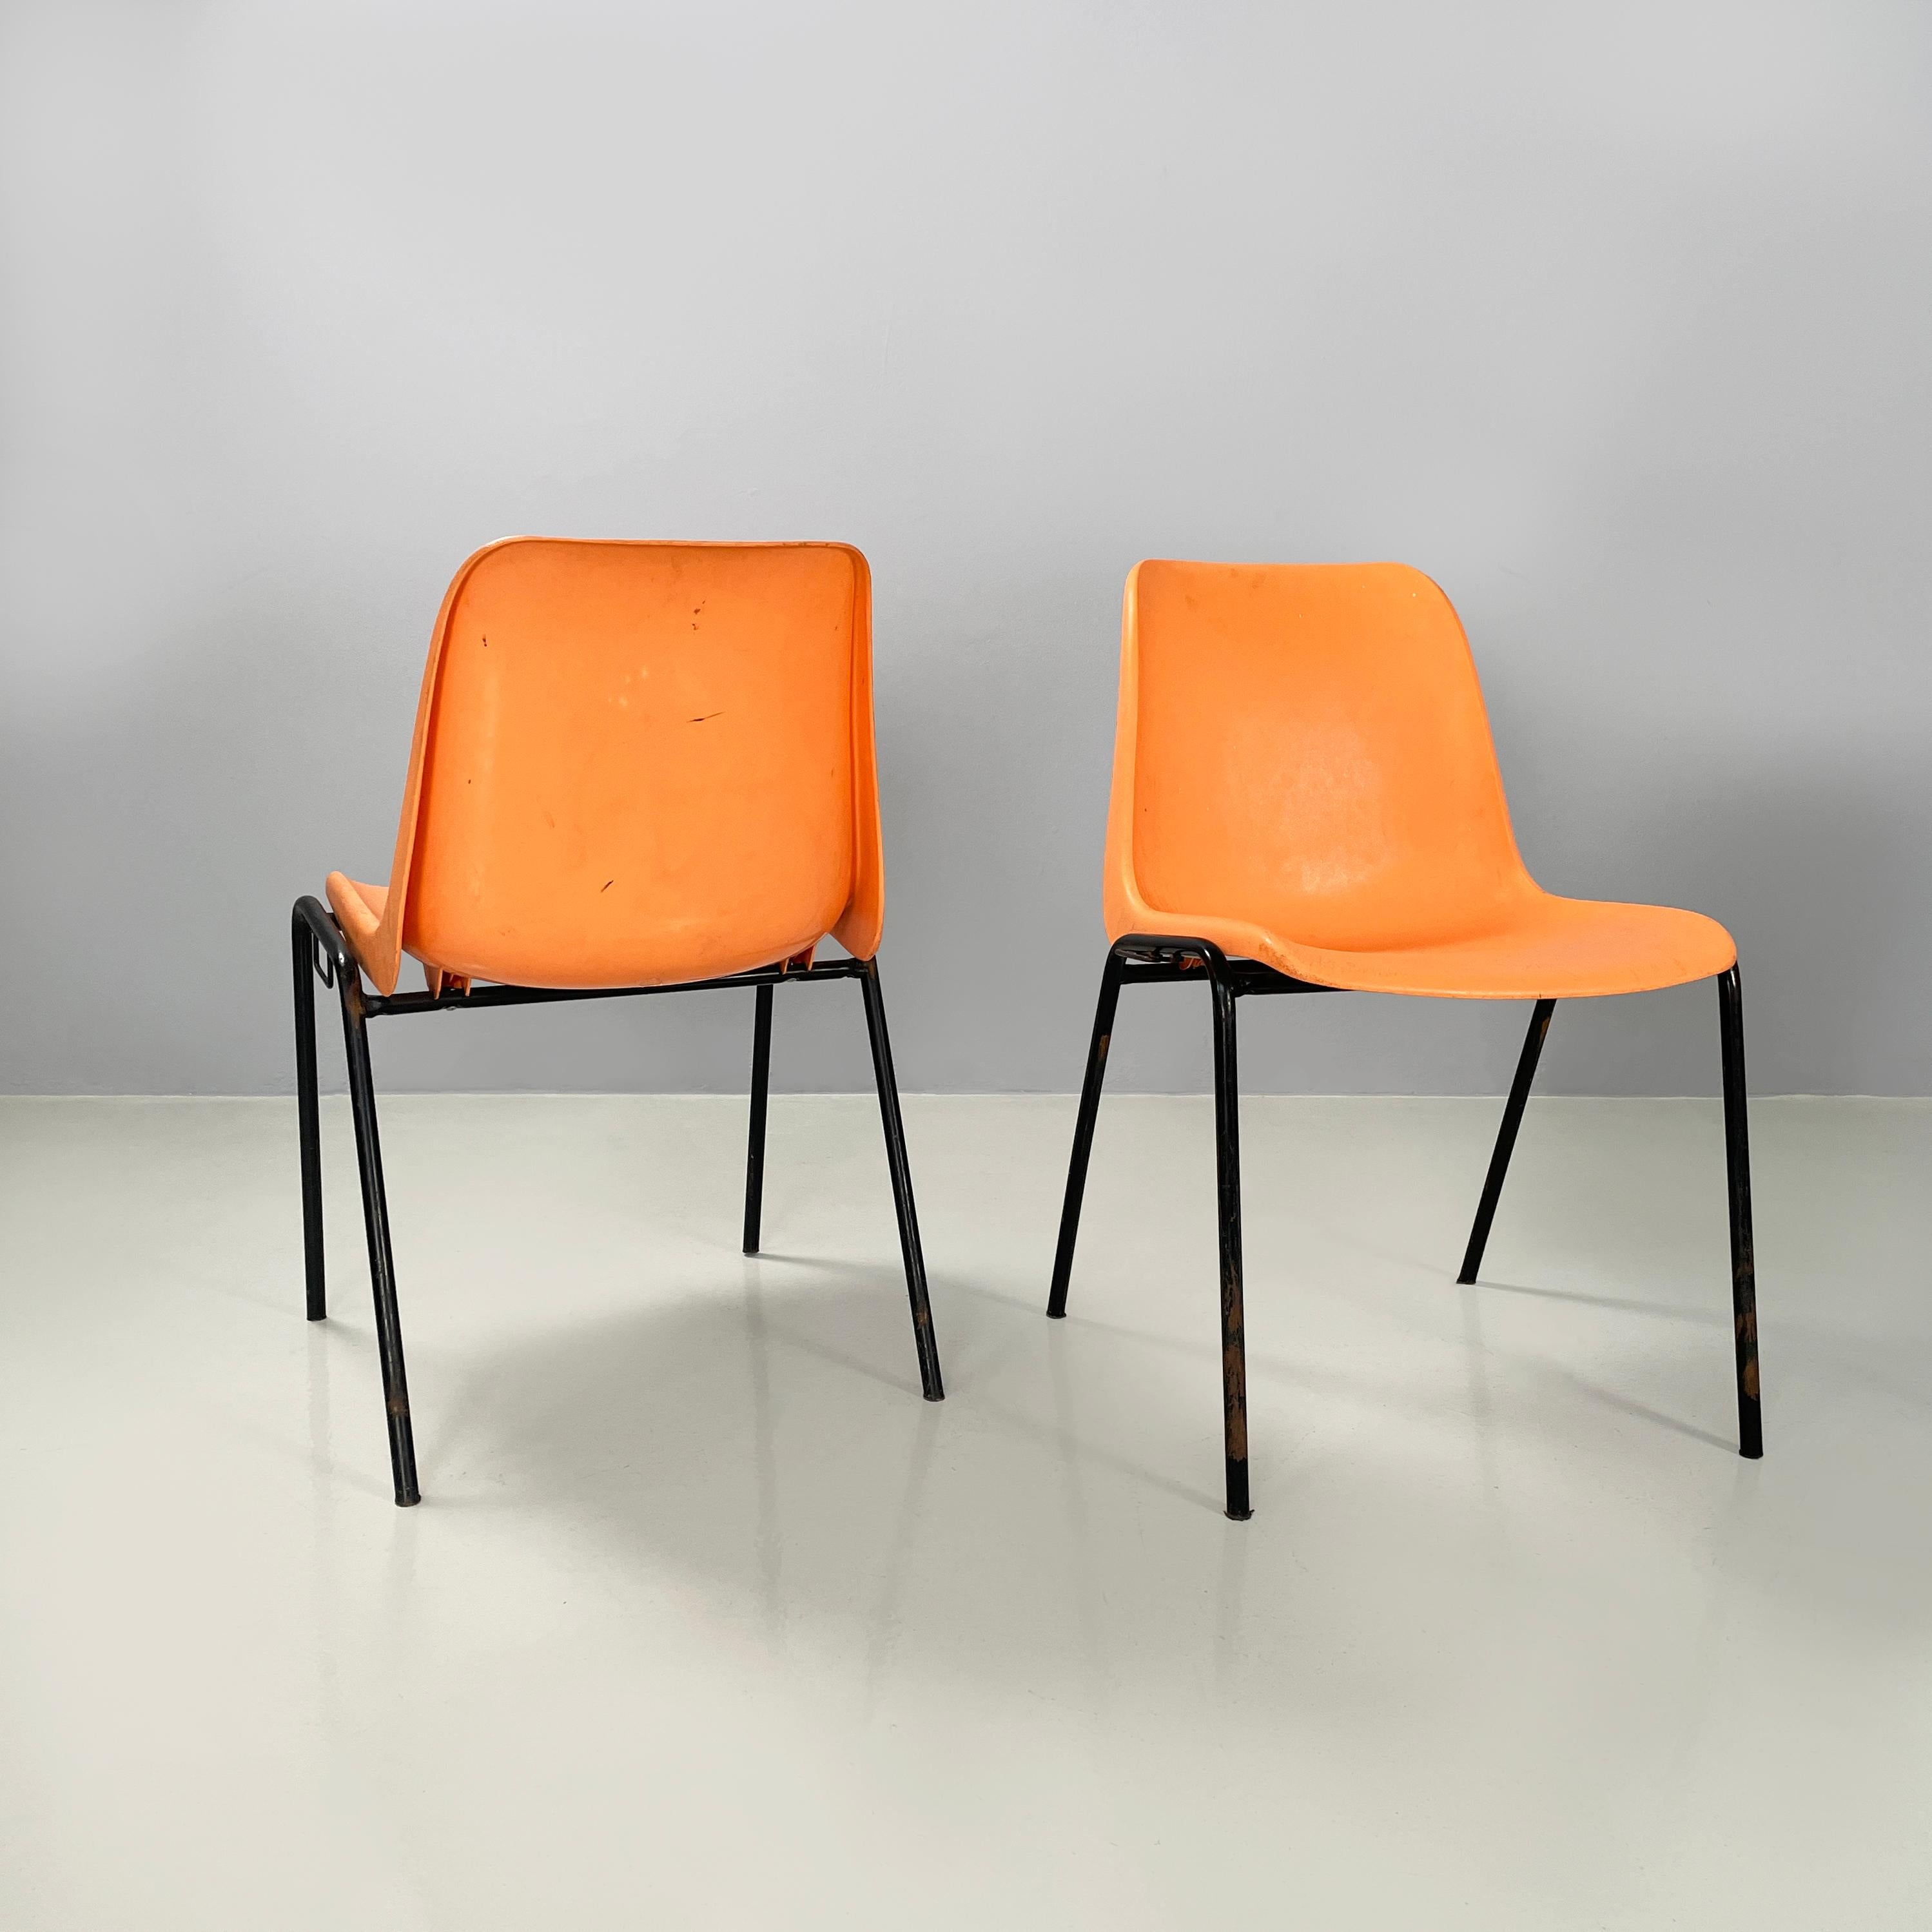 Moderne italienische stapelbare Stühle aus orangefarbenem Kunststoff und schwarzem Metall, 2001
Set aus 3 Stühlen mit gebogenem Monocoque aus orangefarbenem Kunststoff. Die Beine sind aus schwarz lackierten Metallstäben gefertigt. An den beiden